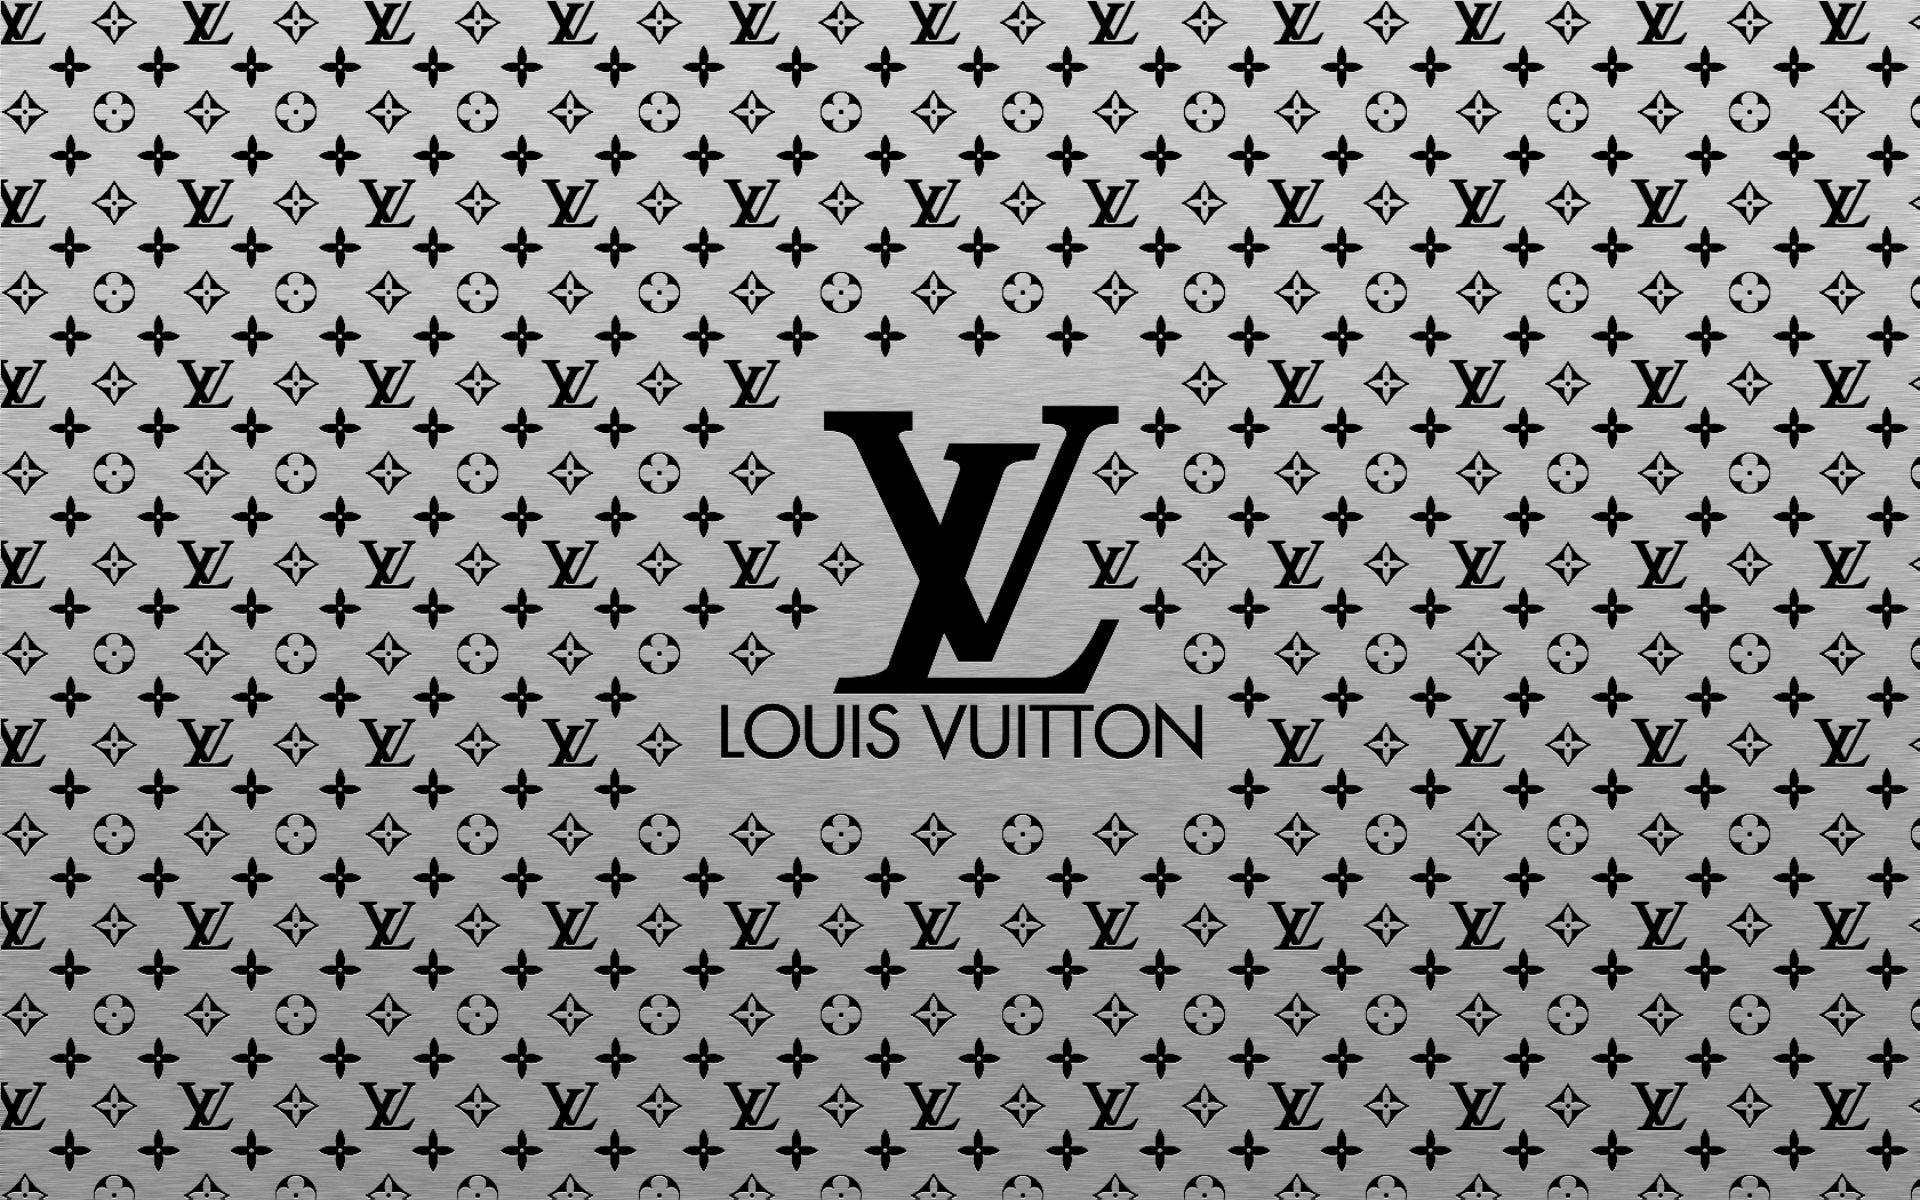 7 Best Louis Vuitton wallpaper ideas  louis vuitton iphone wallpaper  hypebeast wallpaper iphone background wallpaper